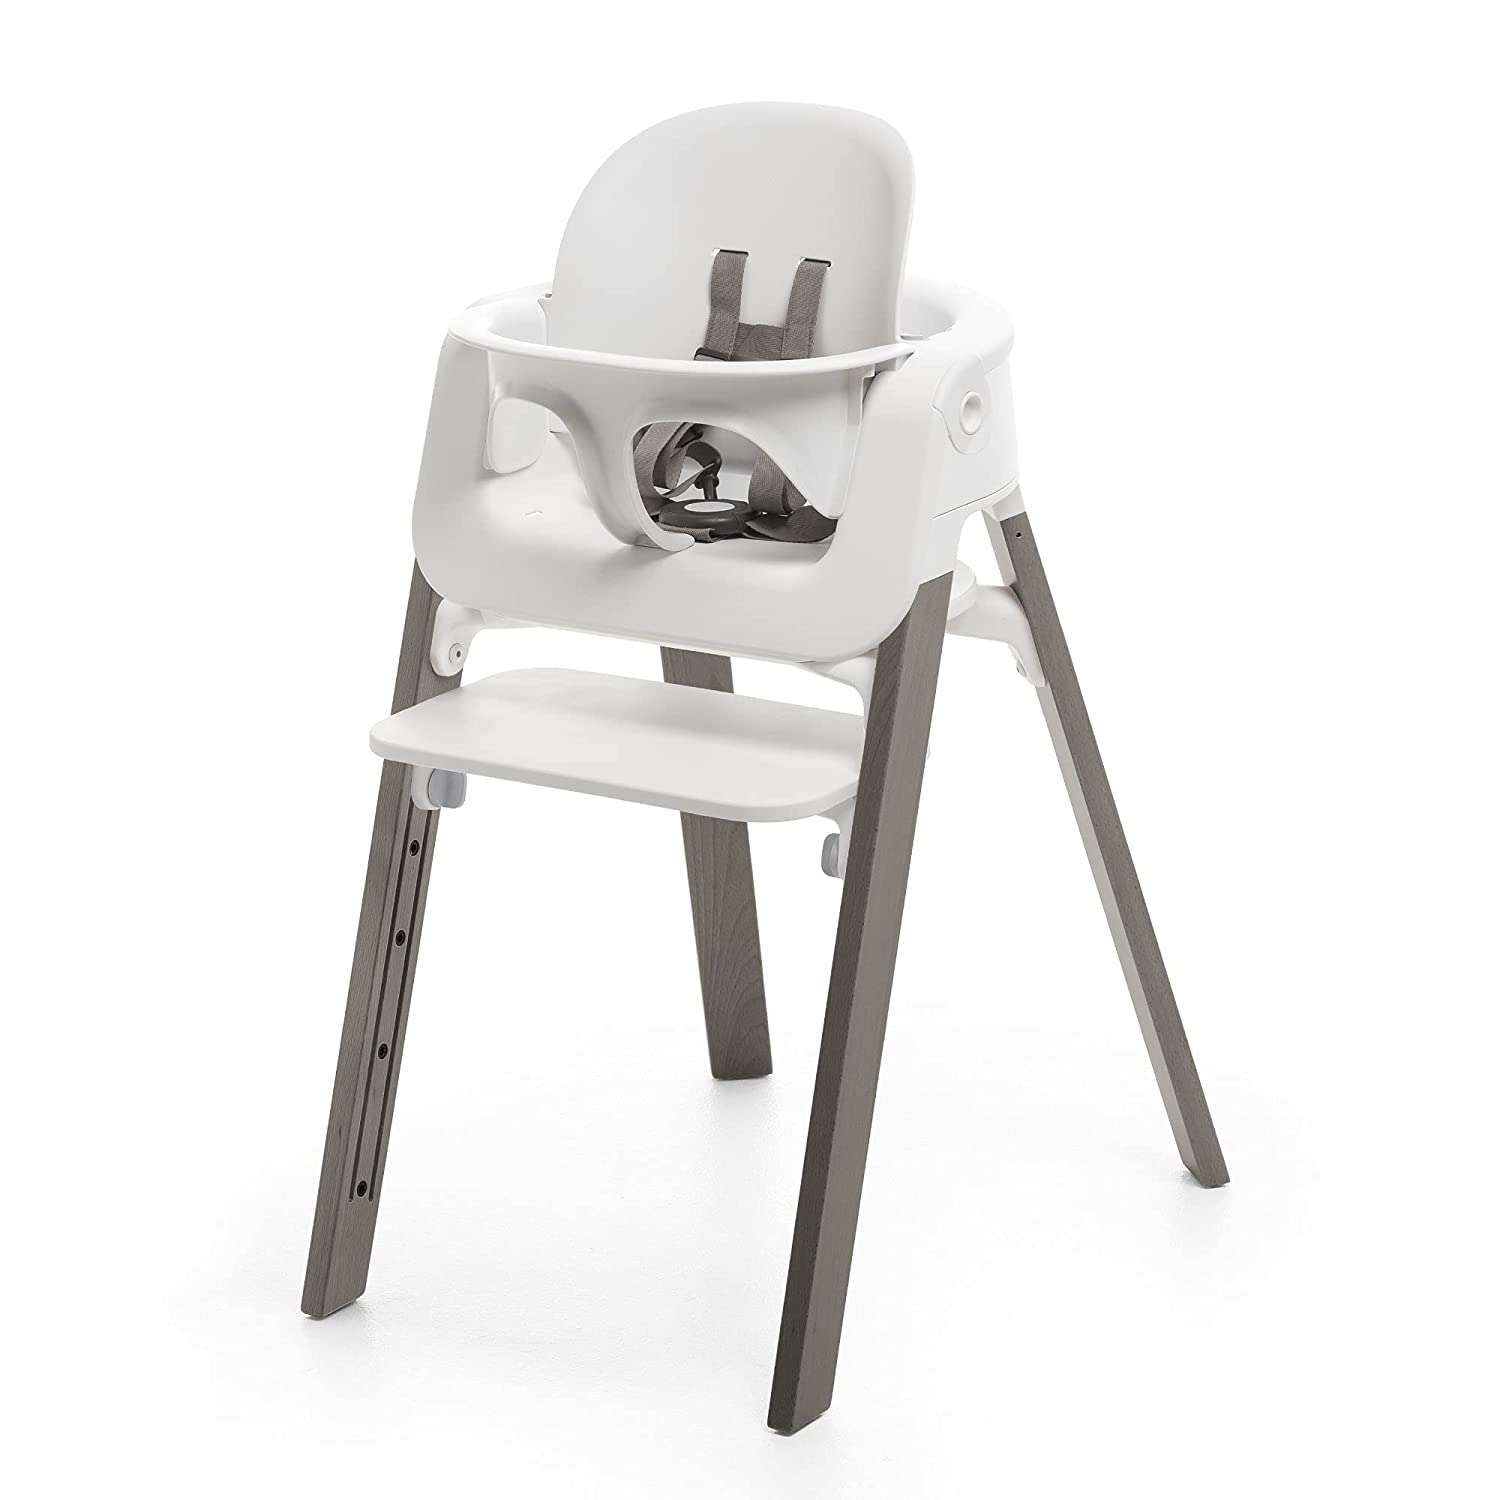 Детский стульчик-трансформер Stokke Steps, серый/белый стульчики для кормления stokke steps